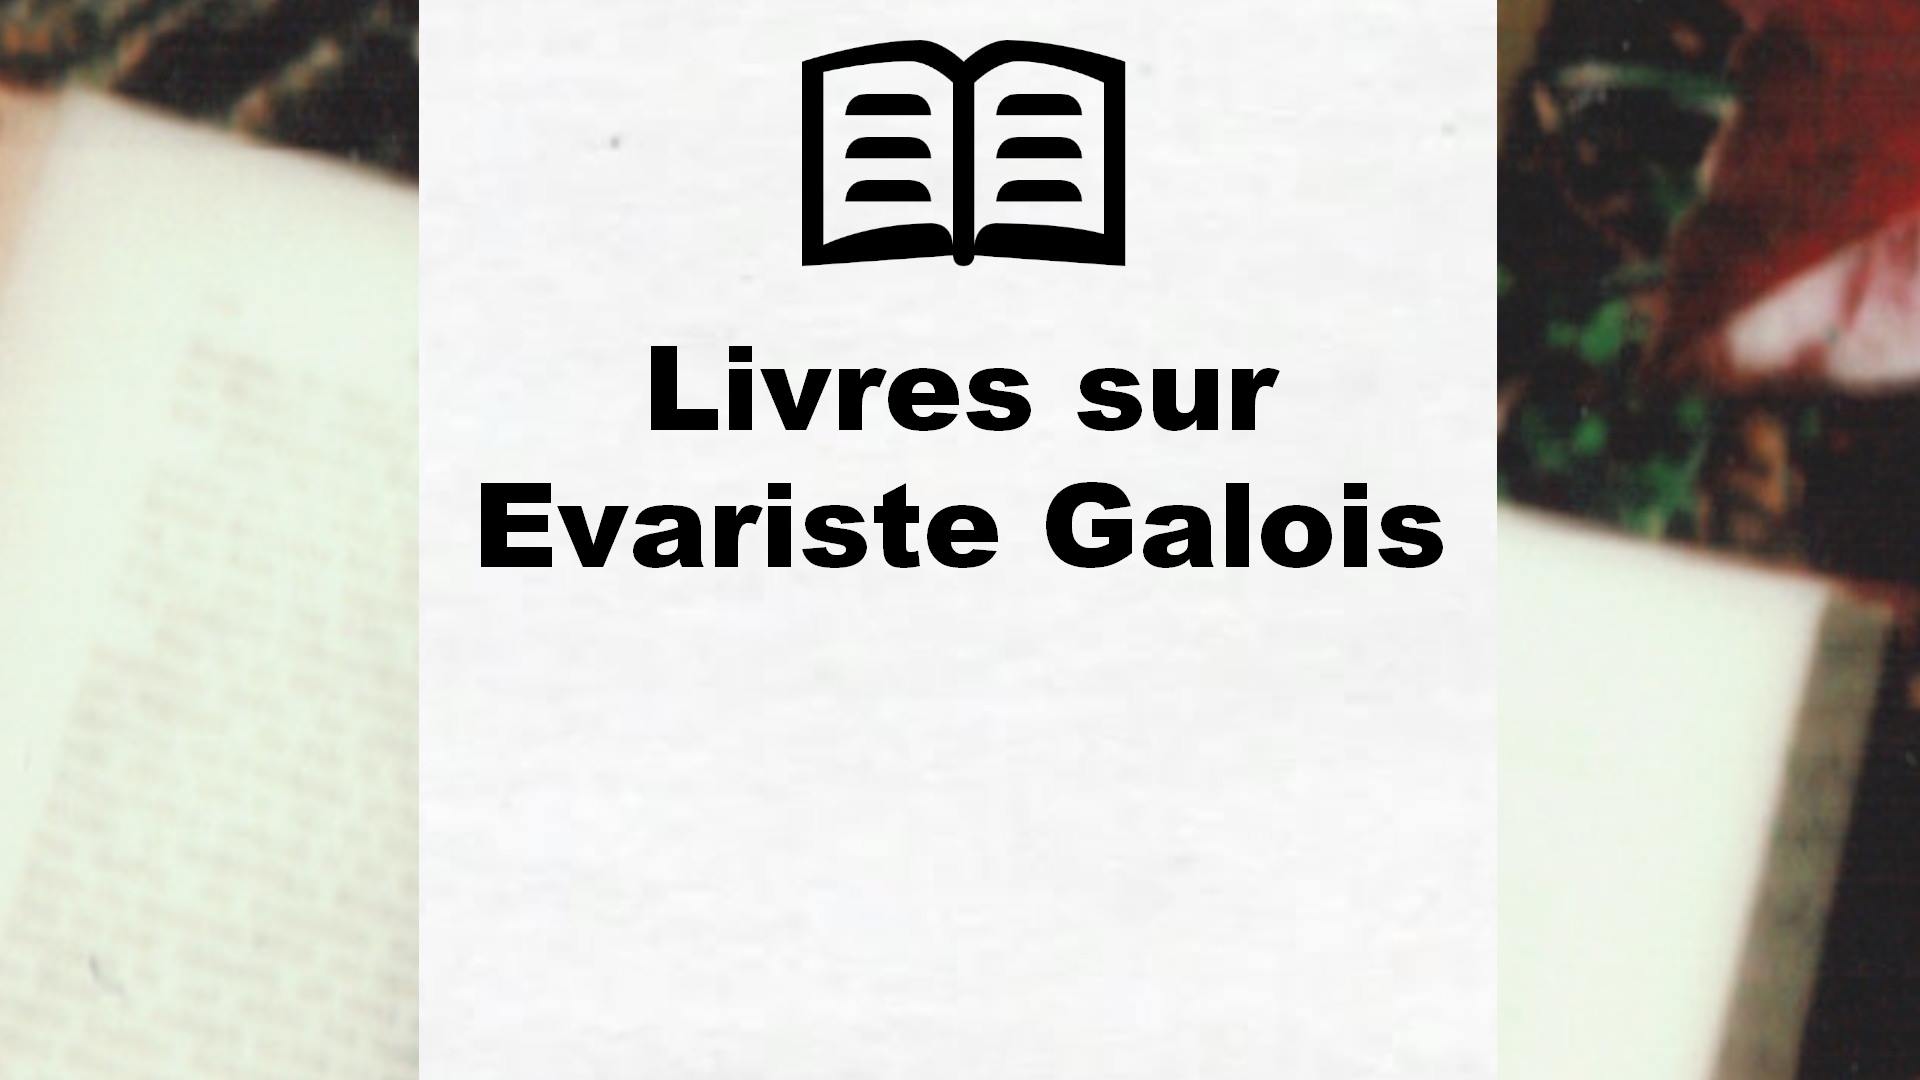 Livres sur Evariste Galois